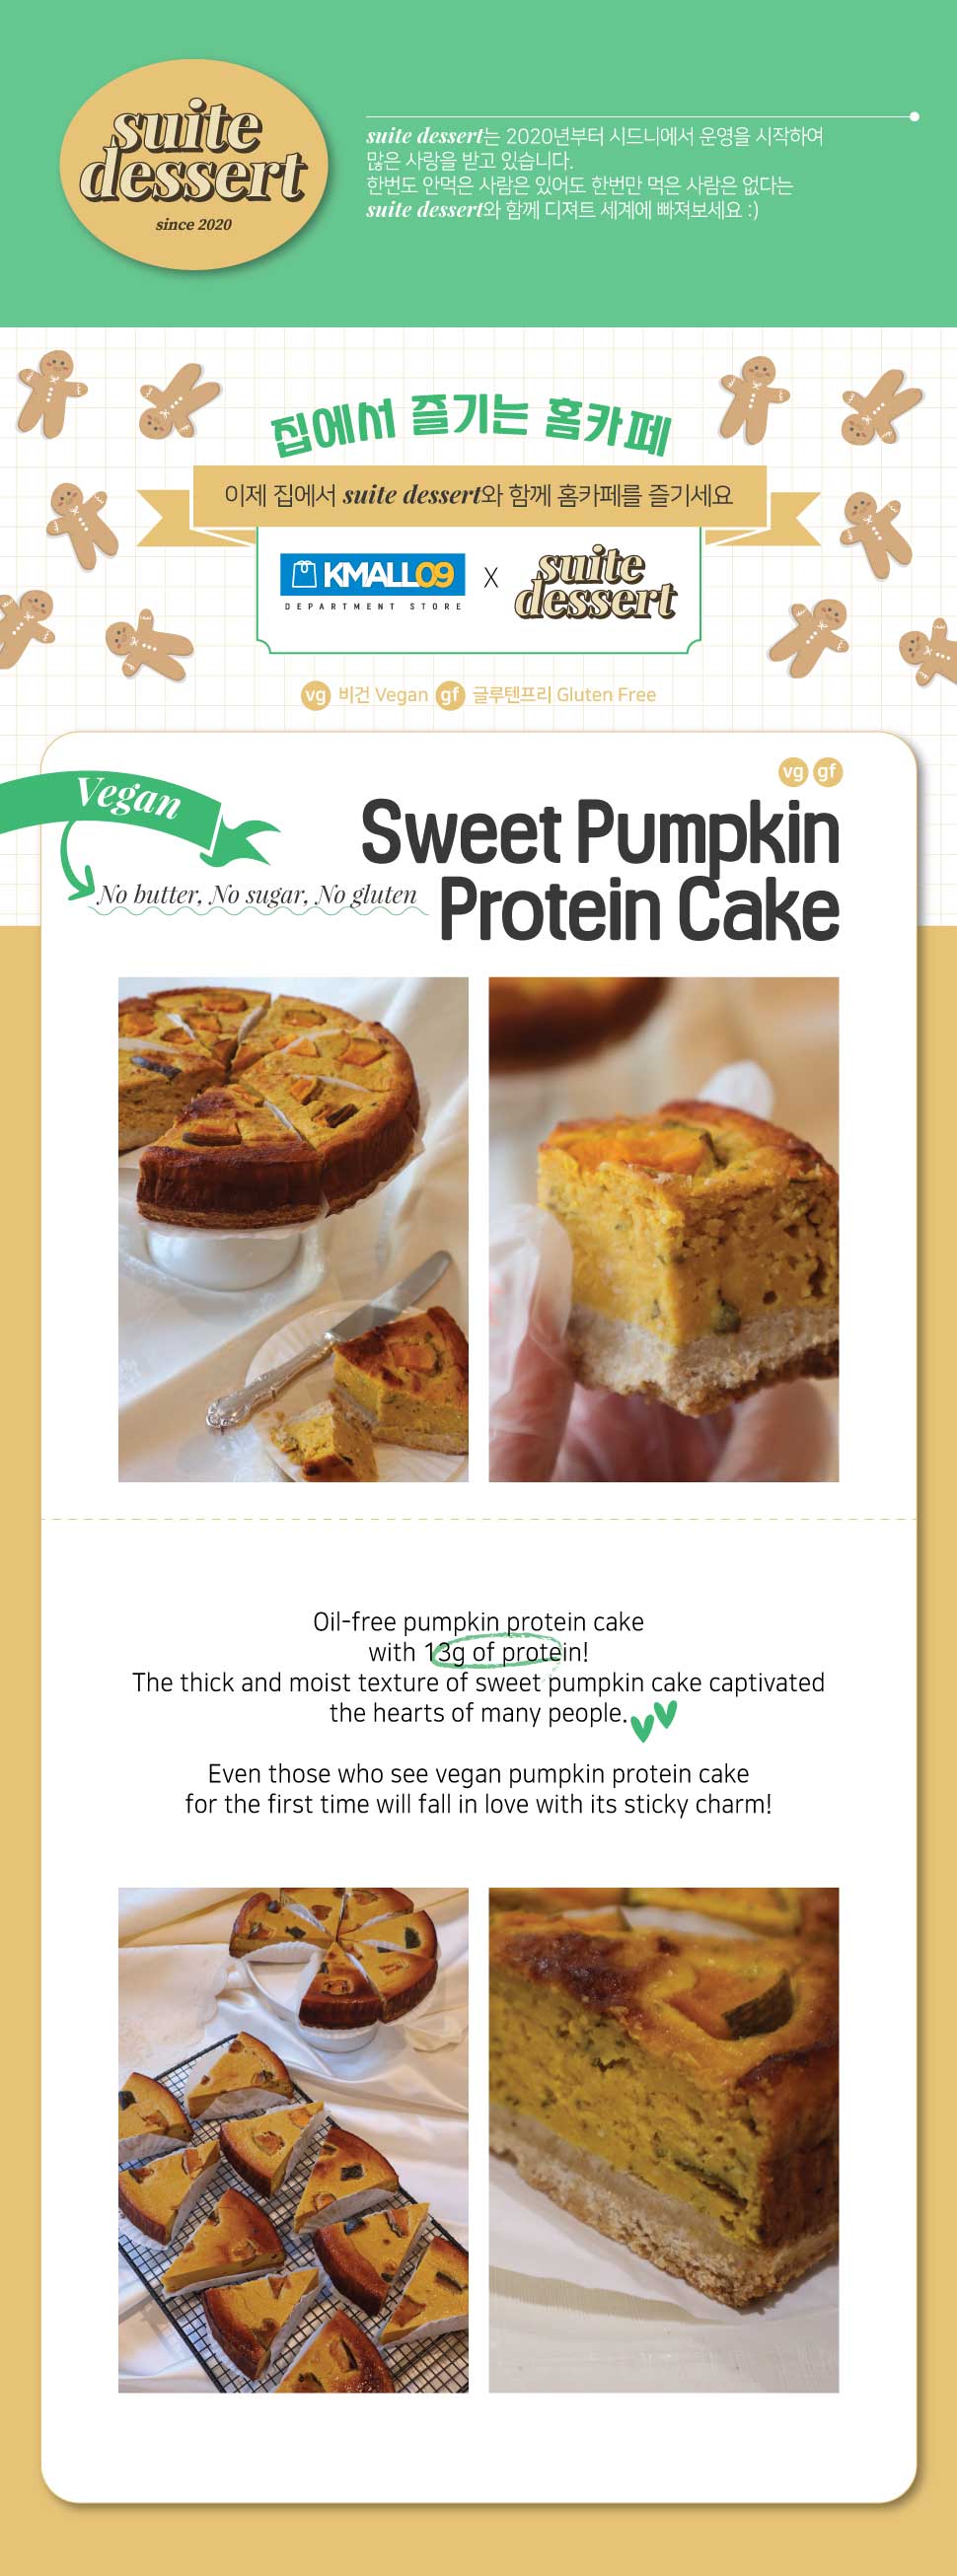 210816_sweet-pumpkin-protein-cake-suitedesser_kanzi